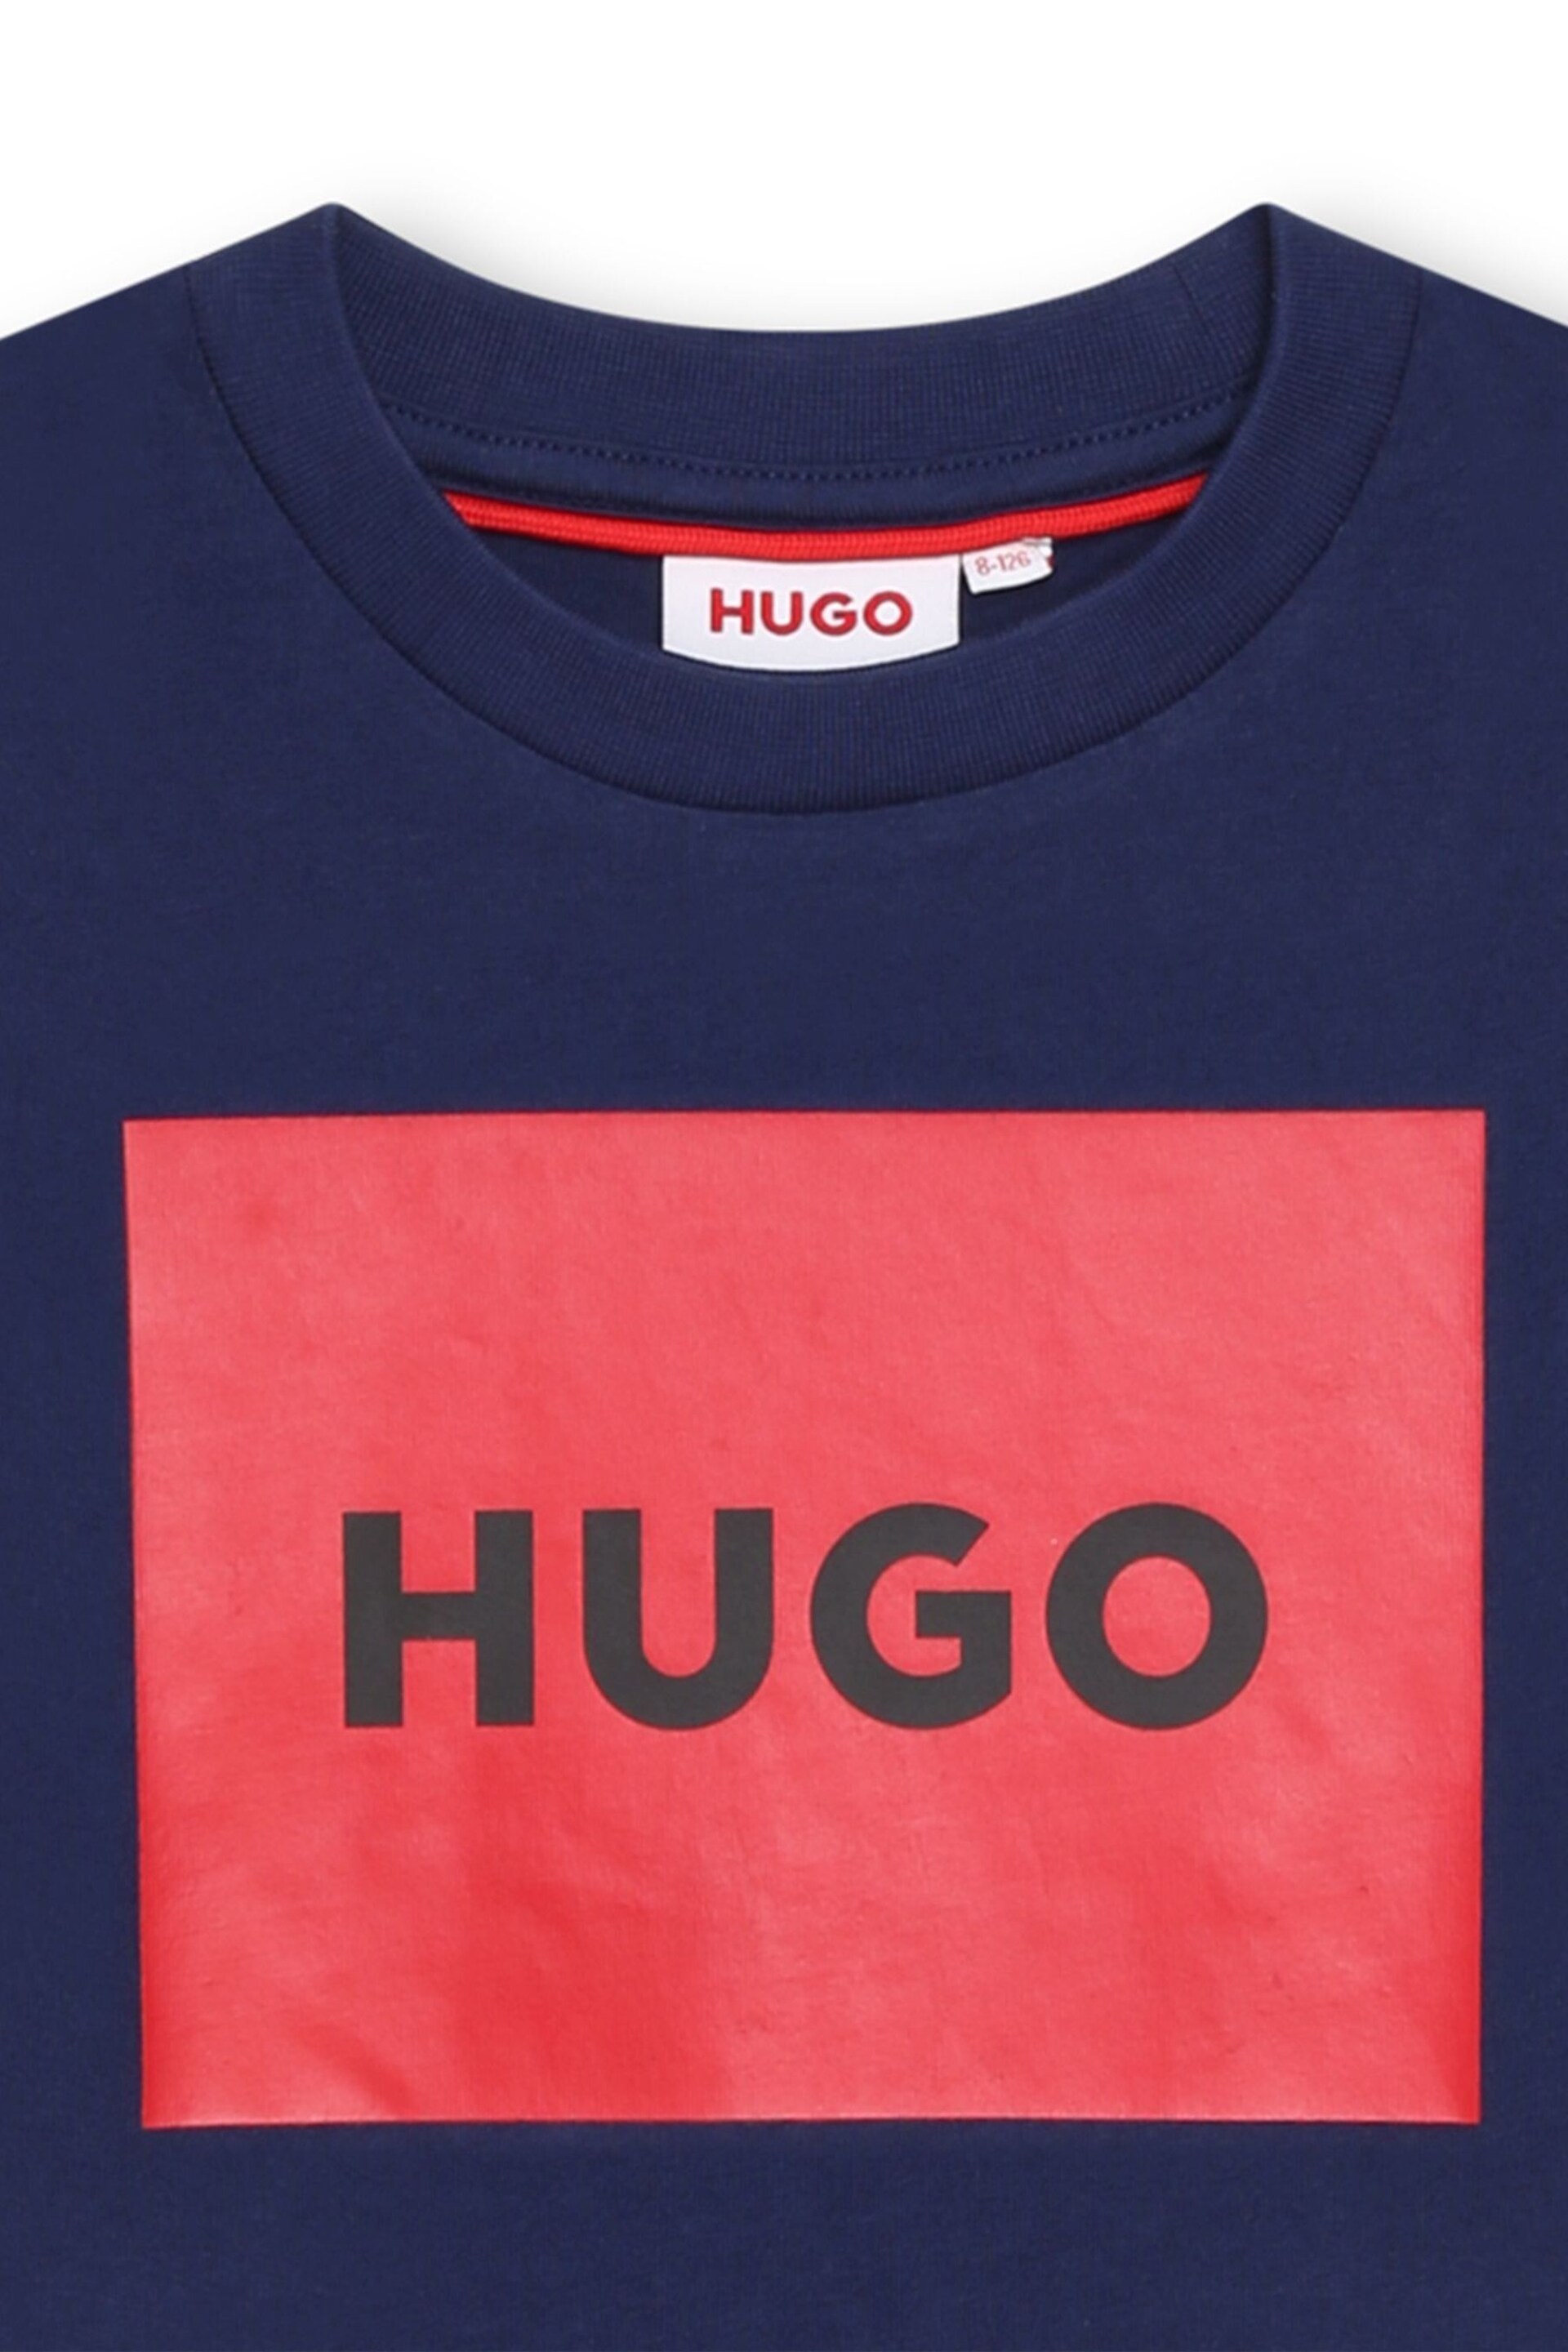 HUGO Blue Logo Short Sleeve T-Shirt - Image 2 of 2